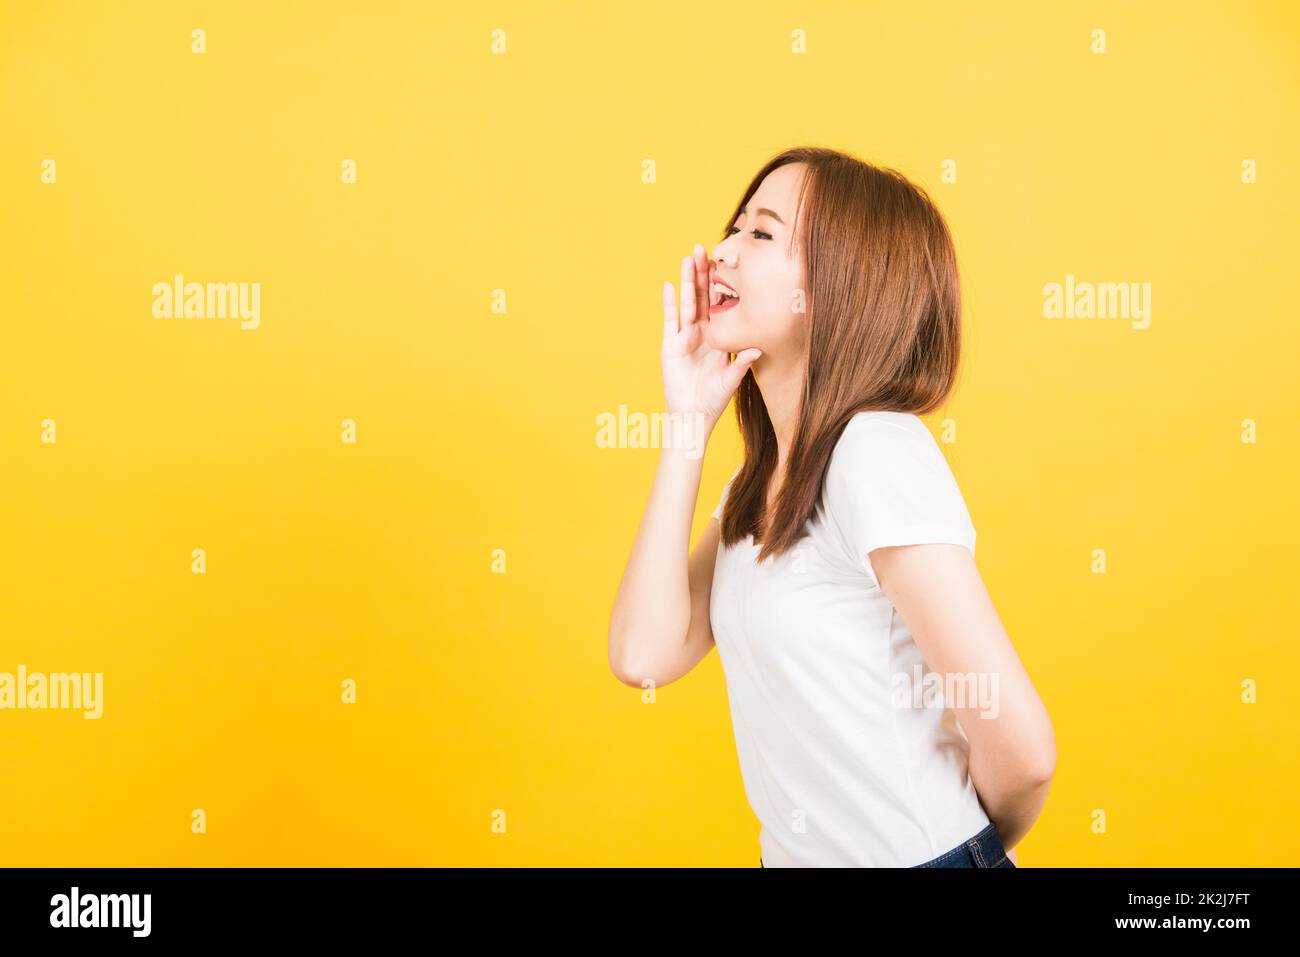 femme adolescente debout main sur la bouche parlant chuchotant secret rumeur Banque D'Images